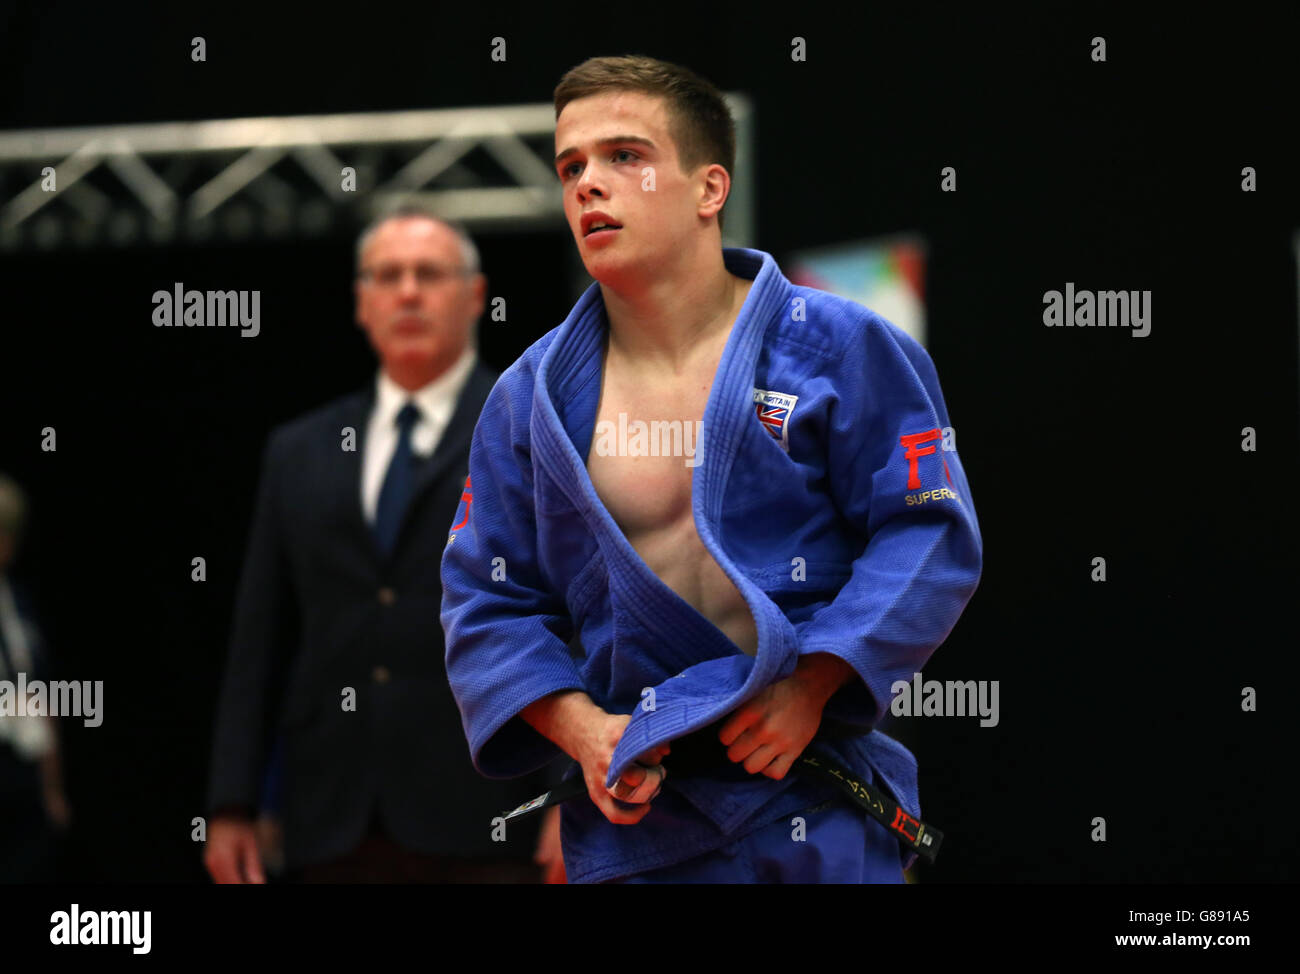 Scott Thompson (blu) della Scozia nella finale degli uomini sotto i 60 kg di judo durante i Giochi scolastici di Sainsbury's 2015 presso il sito dell'Armitage, Manchester. Foto Stock